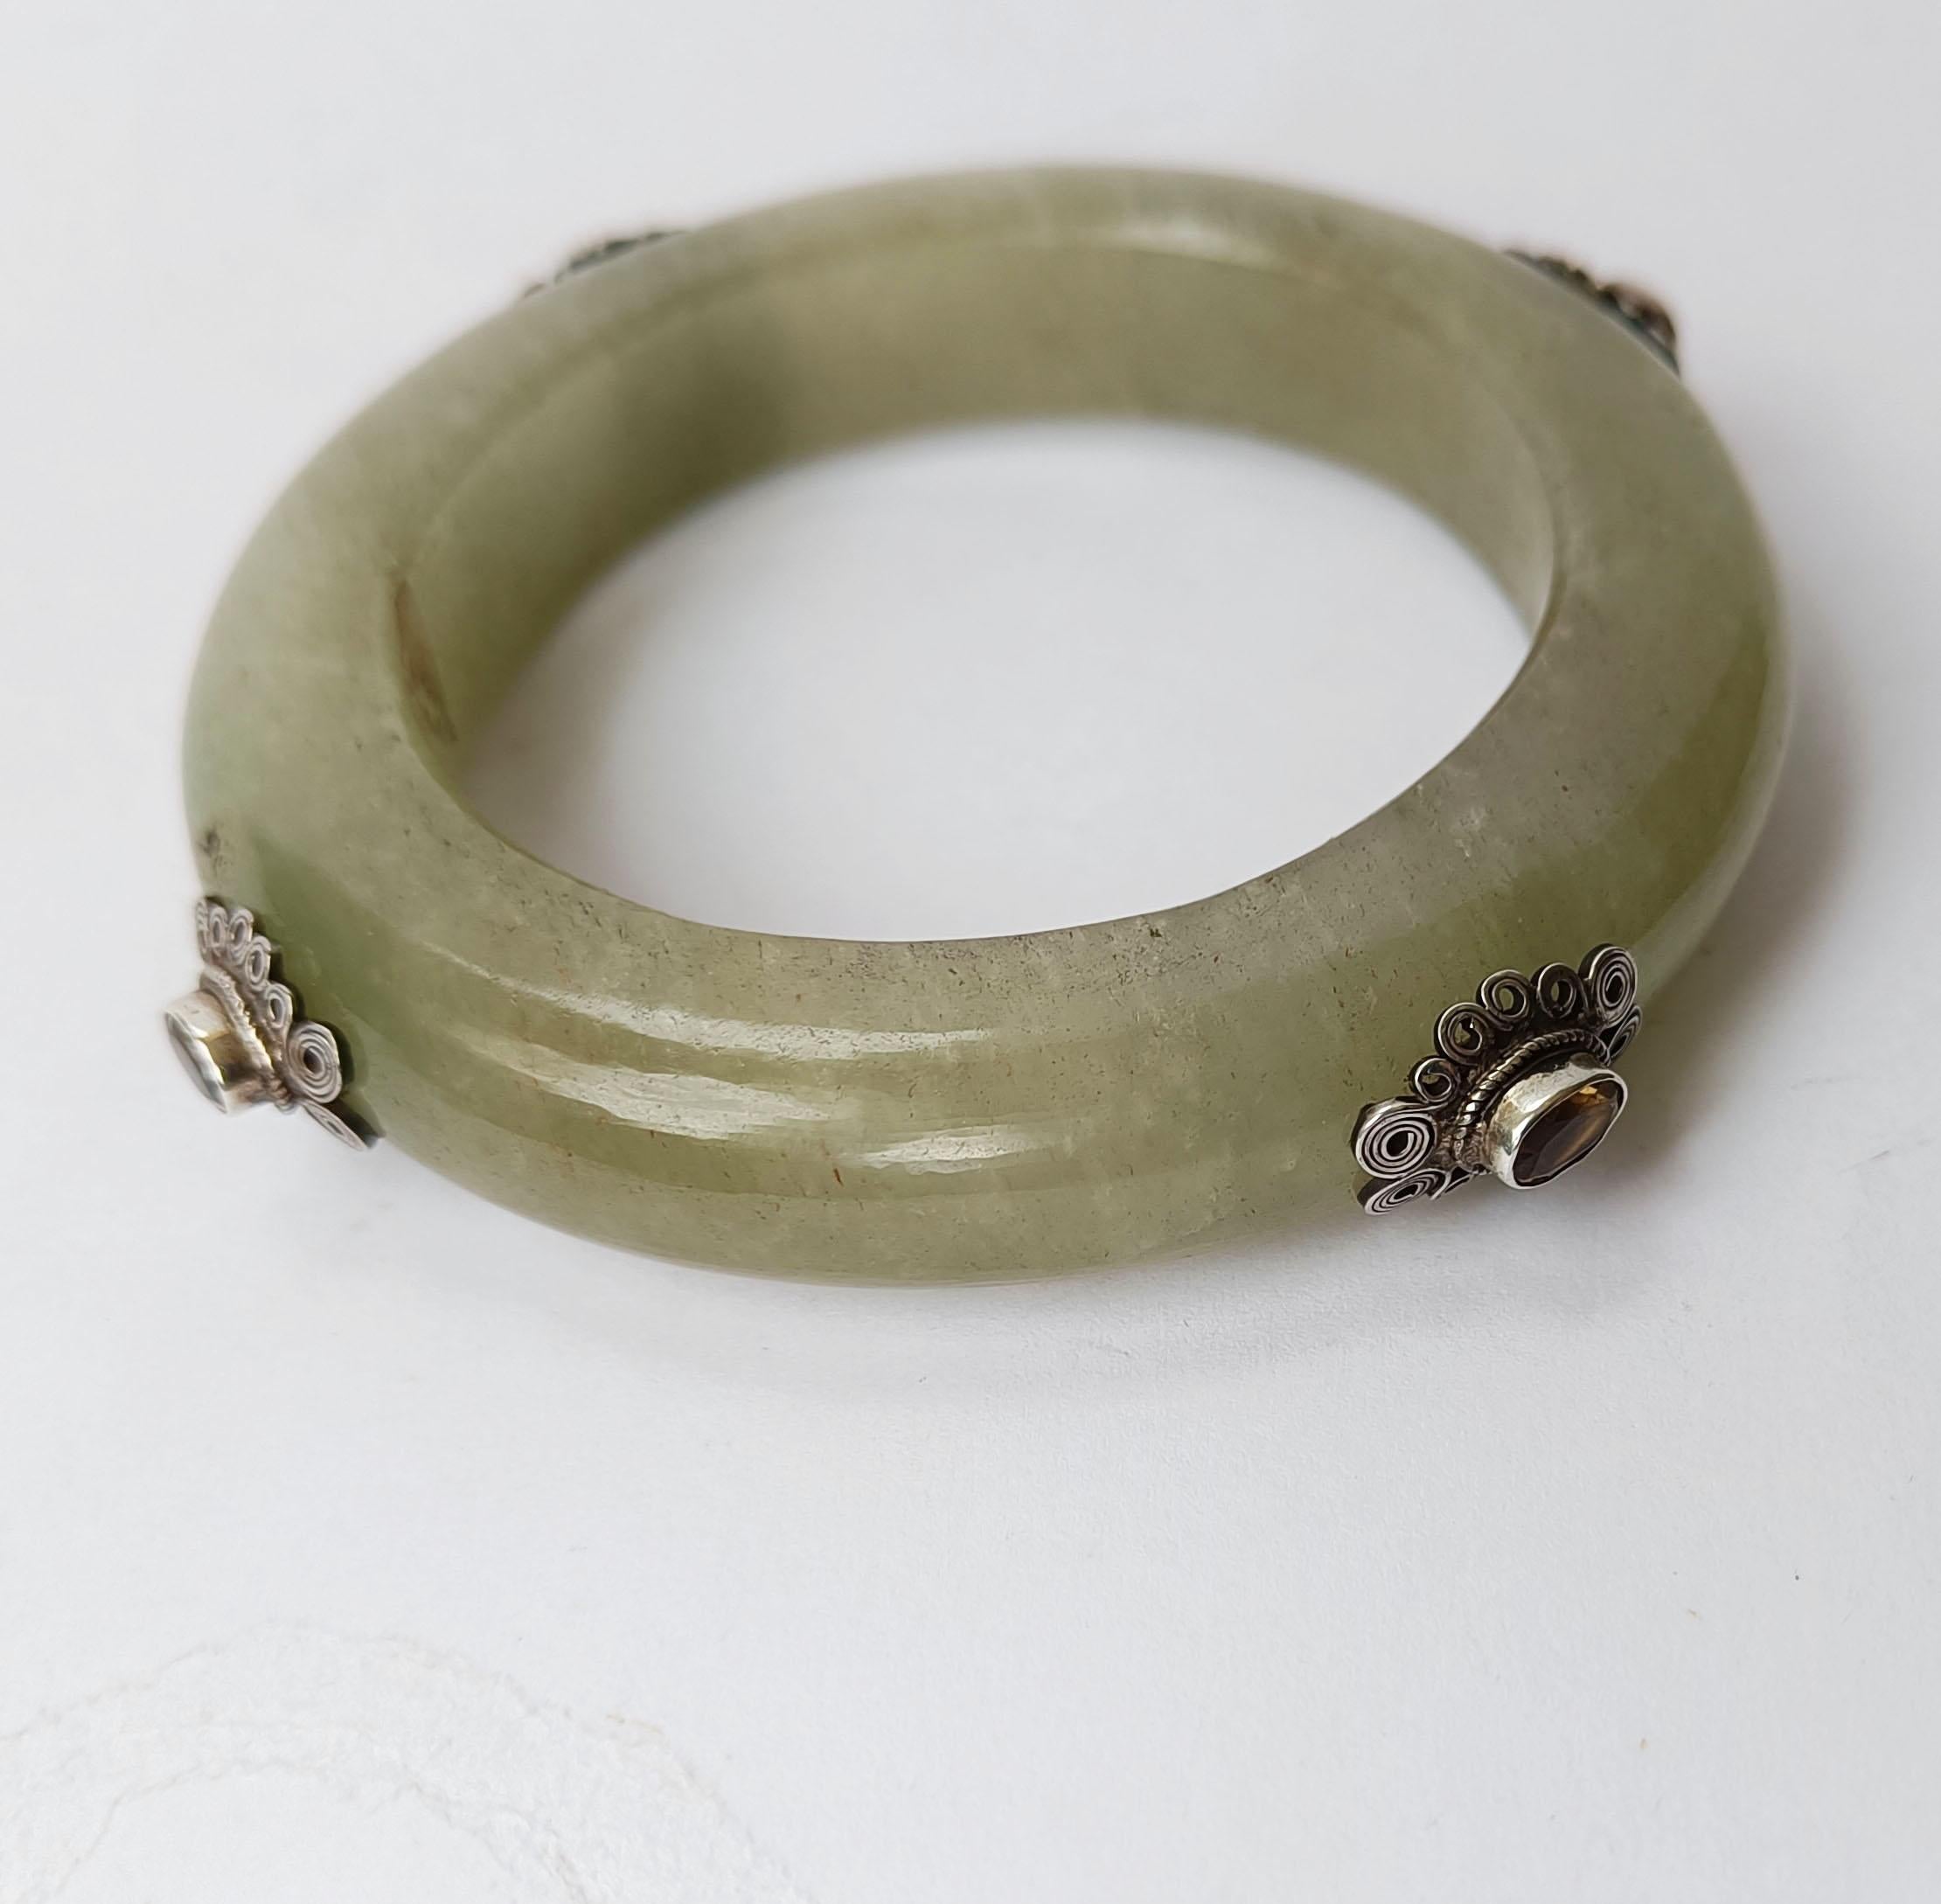 Feine seltene antike indische Hindu Mughal Stil Jade Armband 
Zeitraum   Anfang des 20. Jahrhunderts
Hochwertige Jade vom Typ Celadon, verziert mit Silber und Halbedelsteinen
 
Zustand: Gut.

 
 
